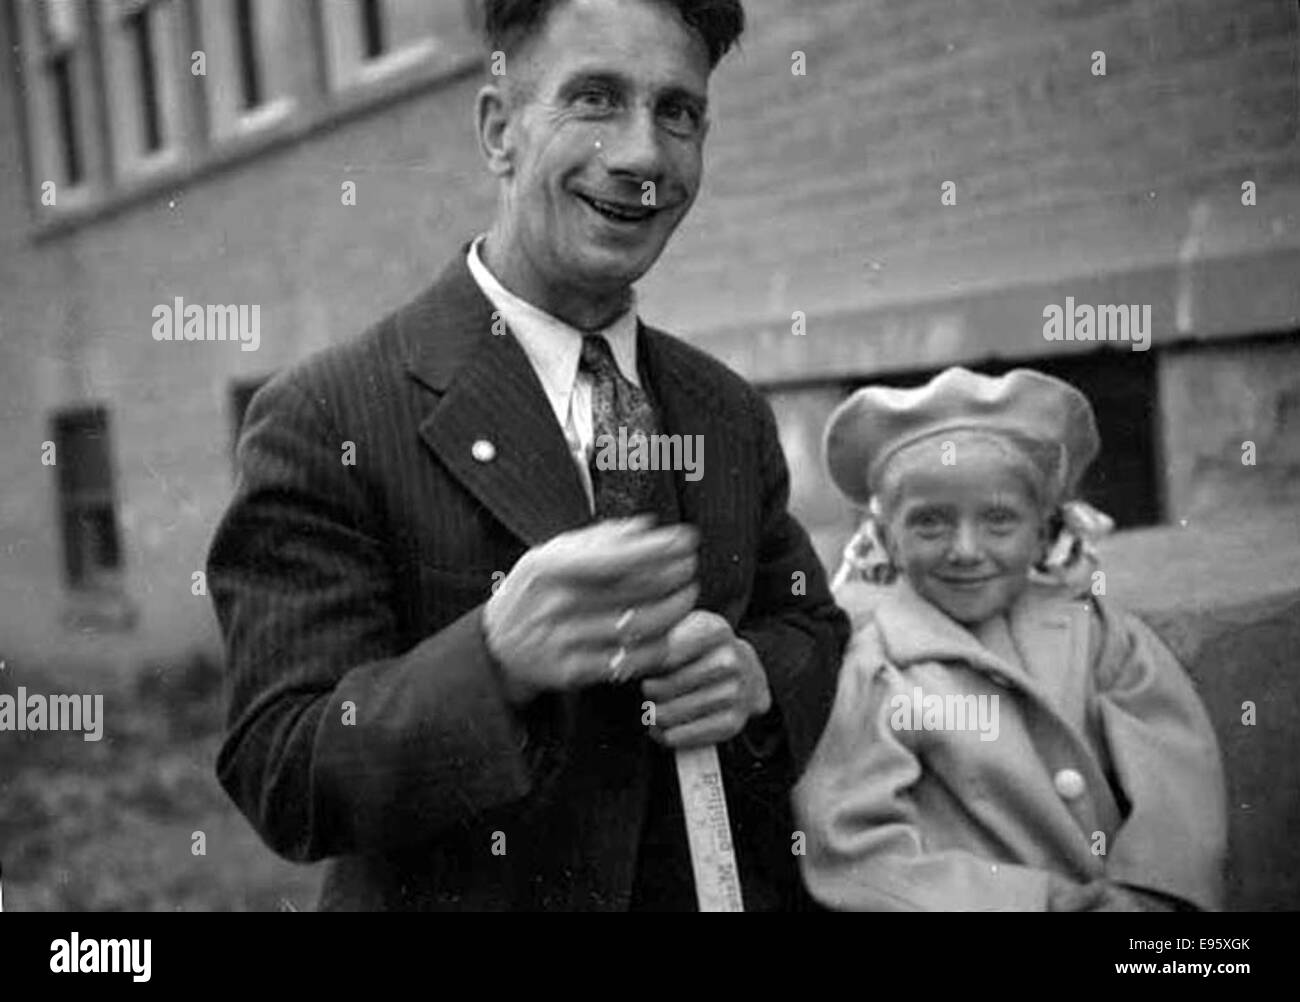 Ein Mann und ein Mädchen in die Kamera Lächeln. 1949 21/4 x 31/4 negativ ist dies eines 54 Fotos im Album "Fort Macleod anonym". Die meisten sind in den späten 1940er Jahren in Fort Macleod, Alberta gedreht. Der Geber die pho Stockfoto